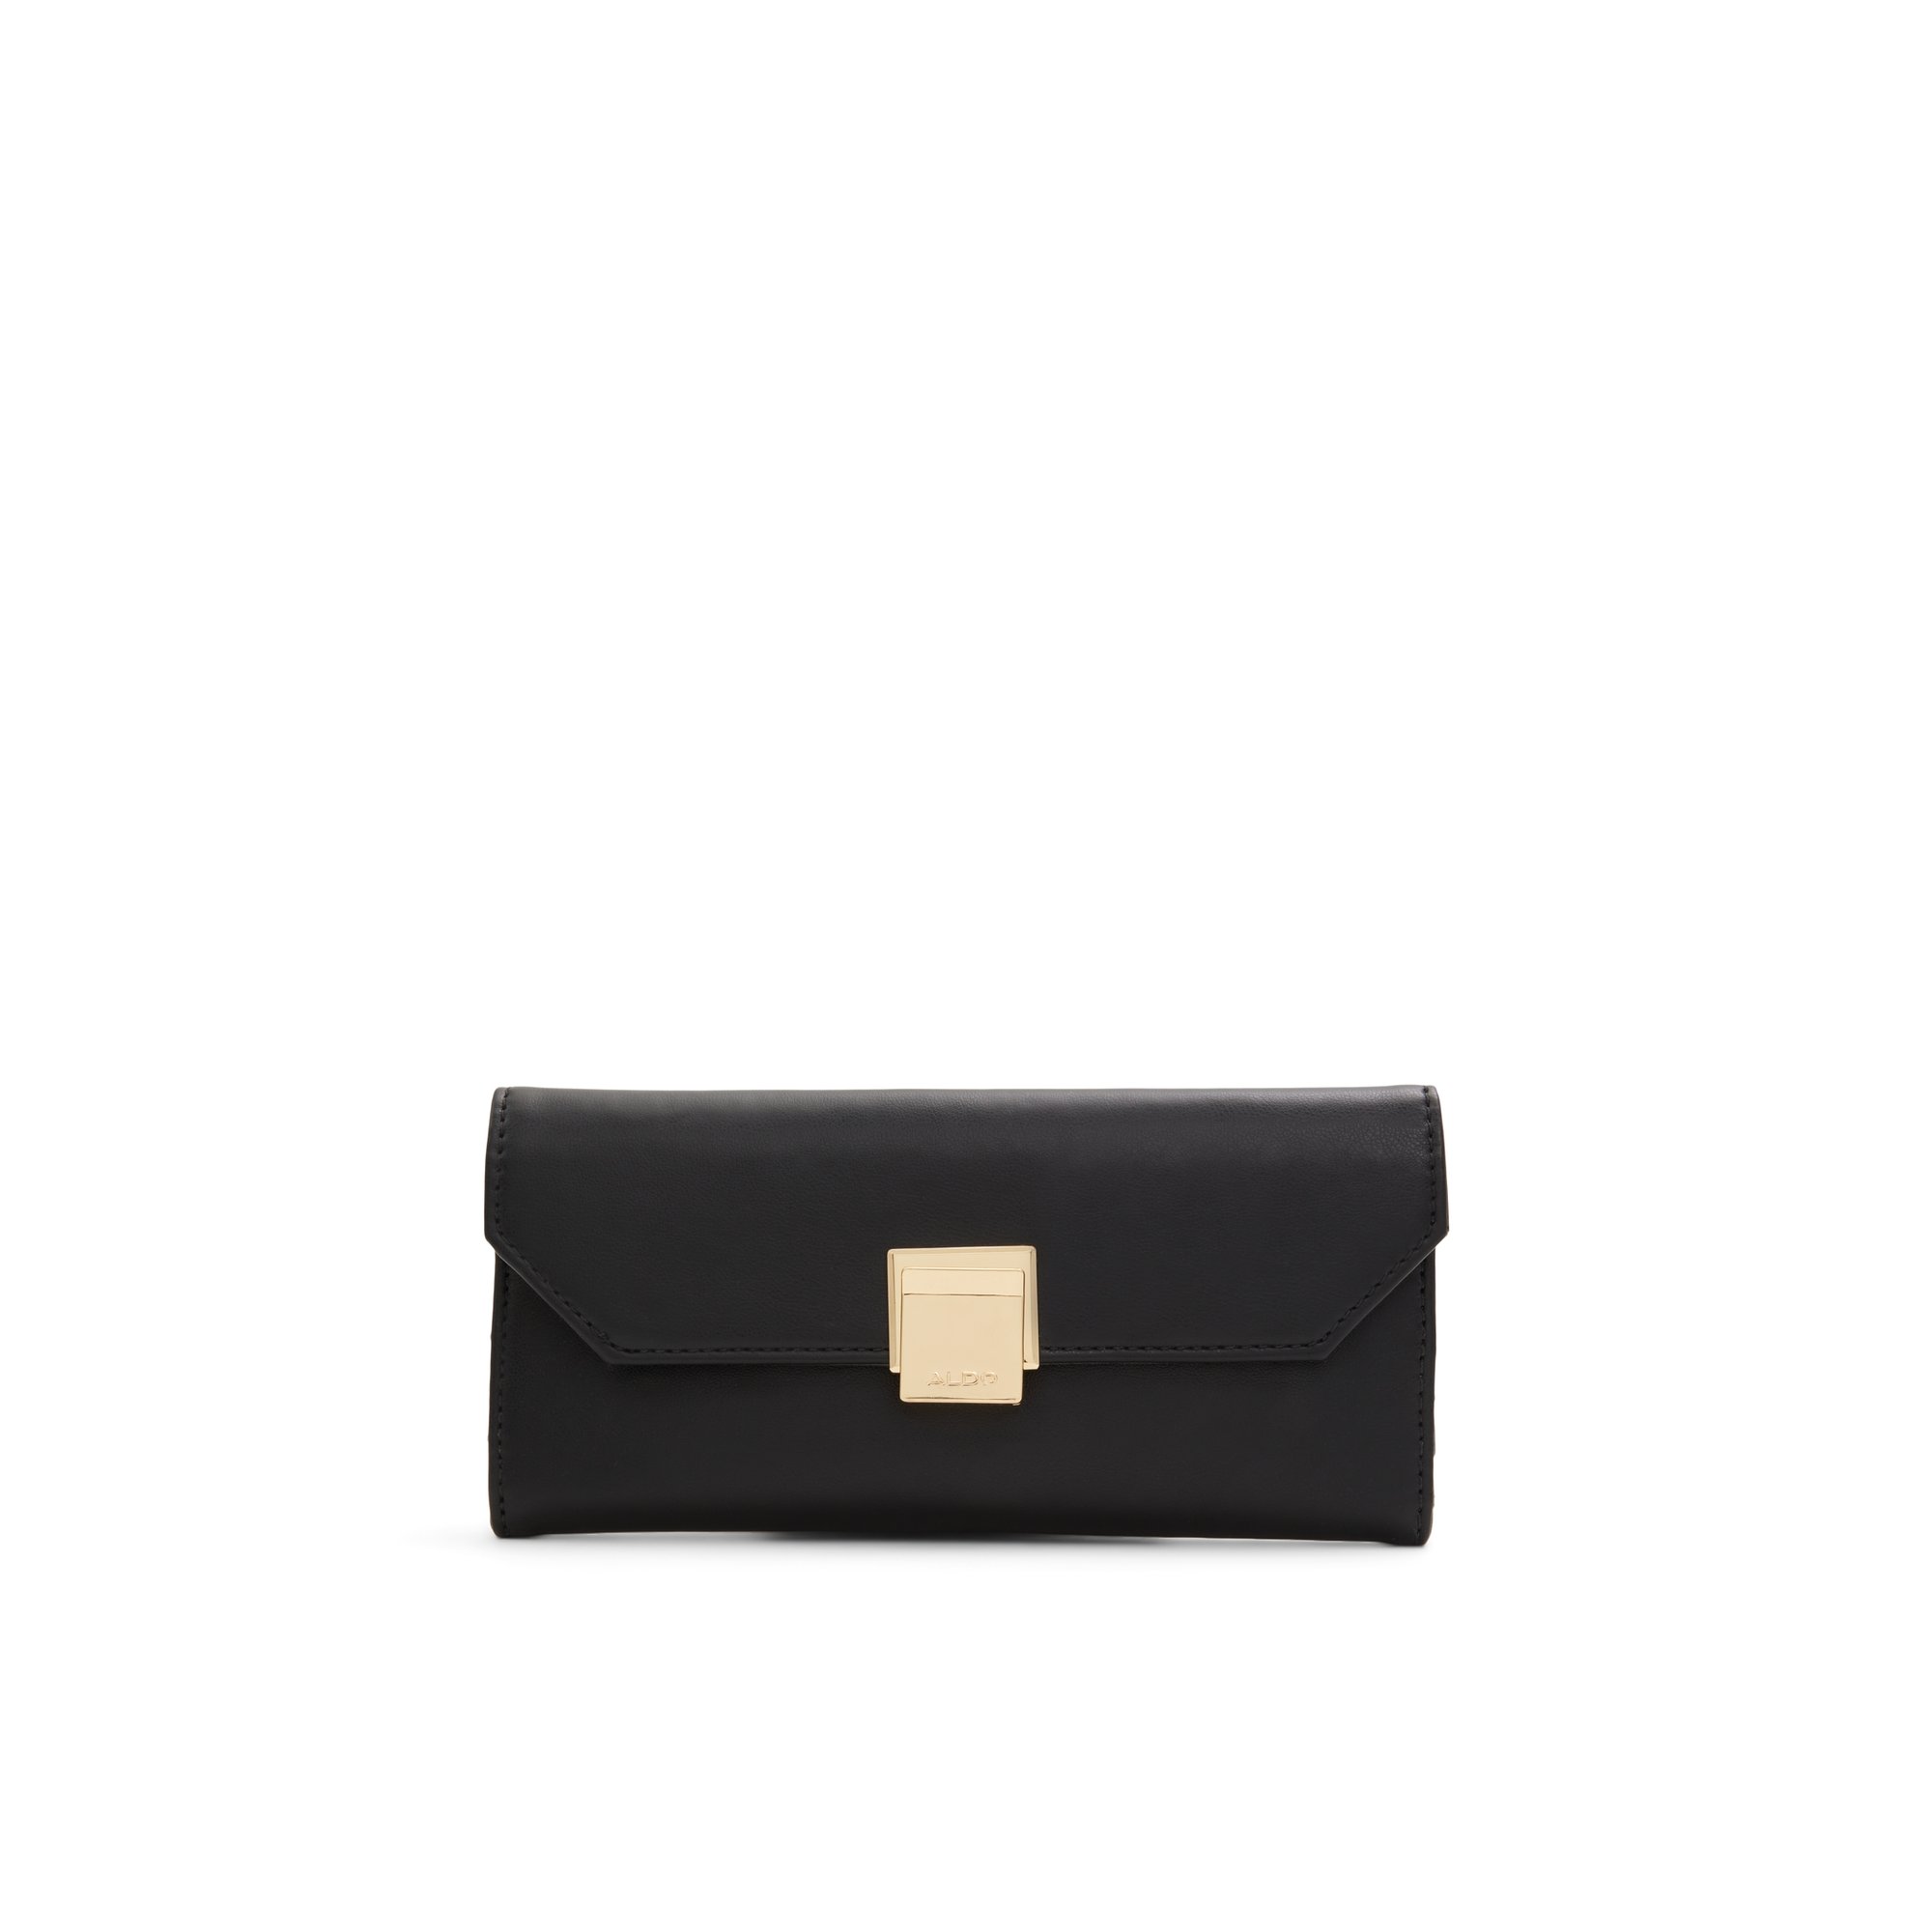 ALDO Laviosa - Women's Wallet Handbag - Black